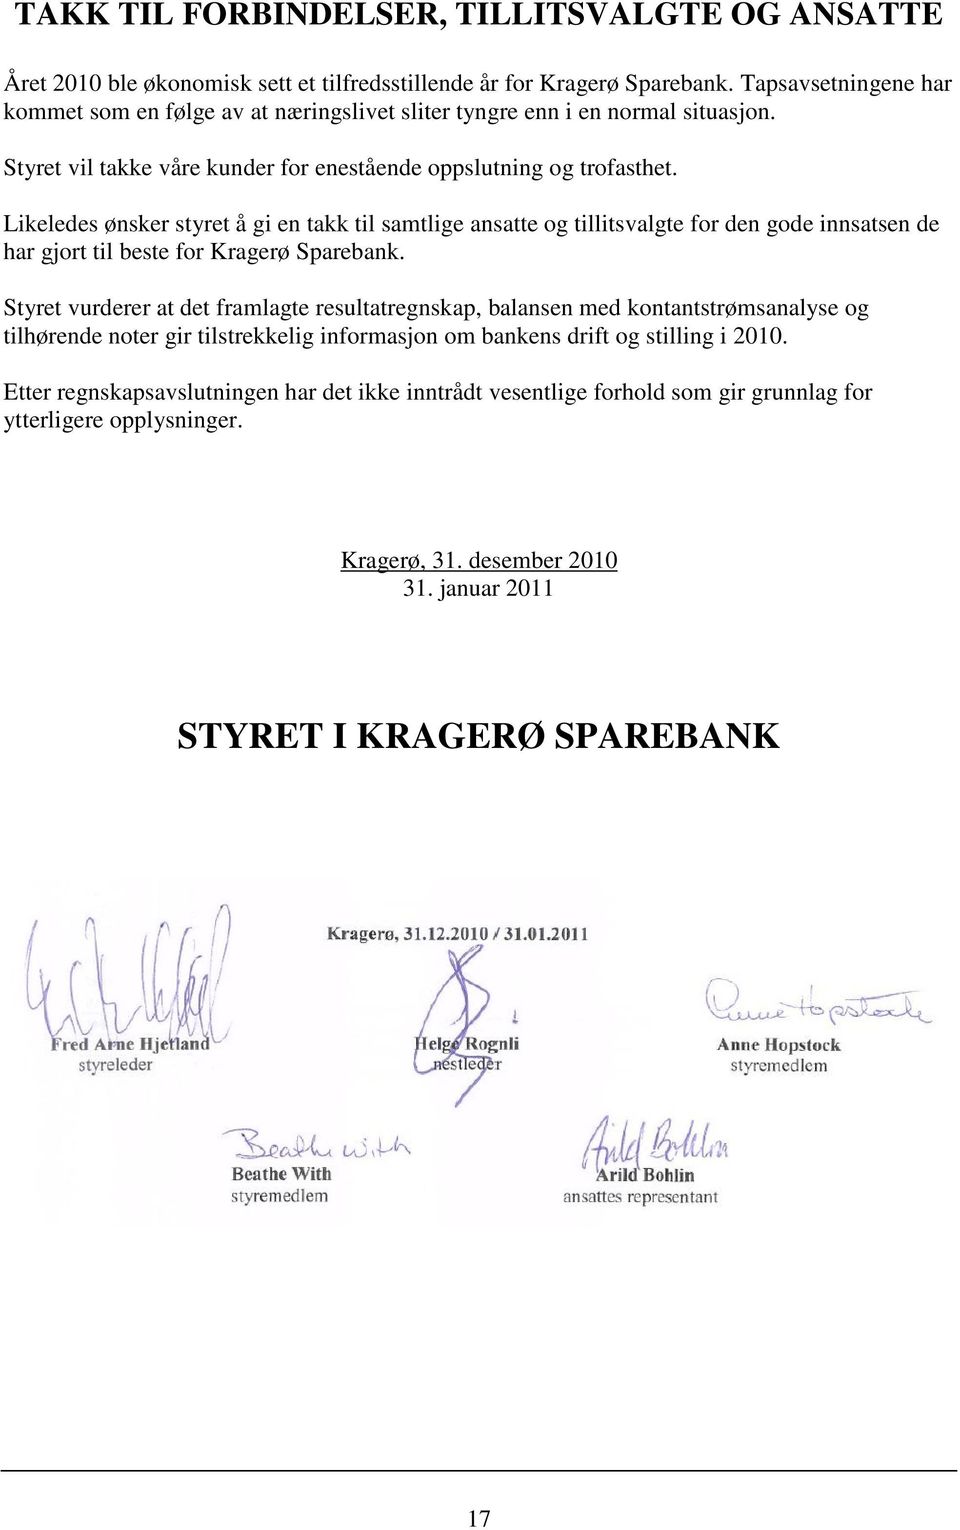 Likeledes ønsker styret å gi en takk til samtlige ansatte og tillitsvalgte for den gode innsatsen de har gjort til beste for Kragerø Sparebank.